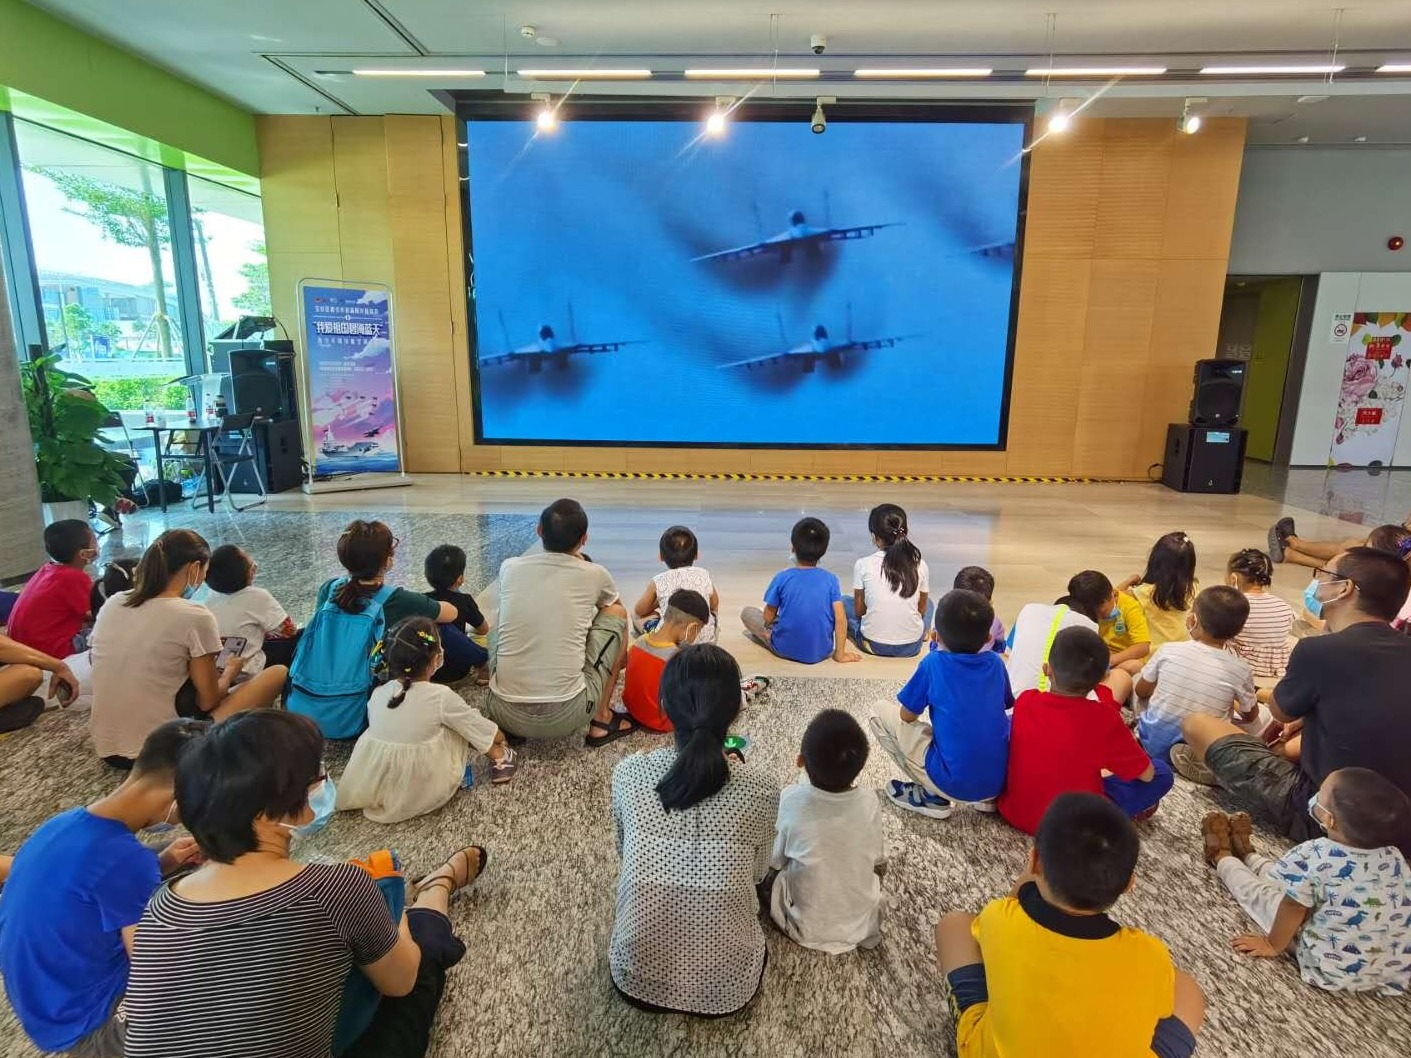 我爱祖国的碧海蓝天：军事海洋航空模型展在宝安开展